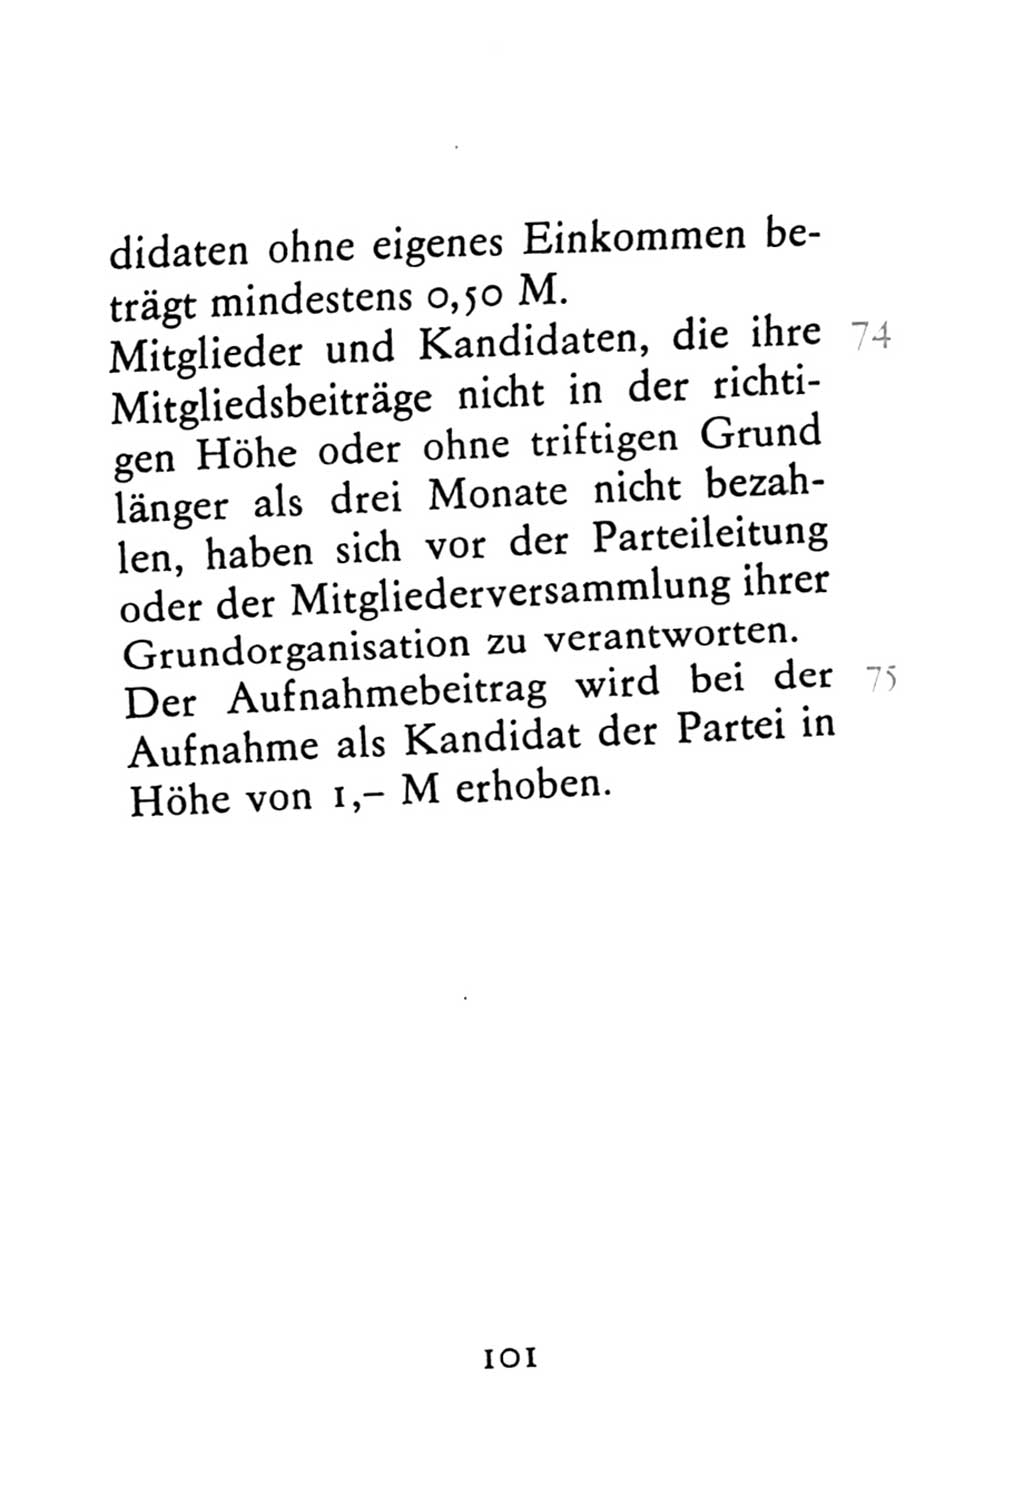 Statut der Sozialistischen Einheitspartei Deutschlands (SED) 1976, Seite 101 (St. SED DDR 1976, S. 101)